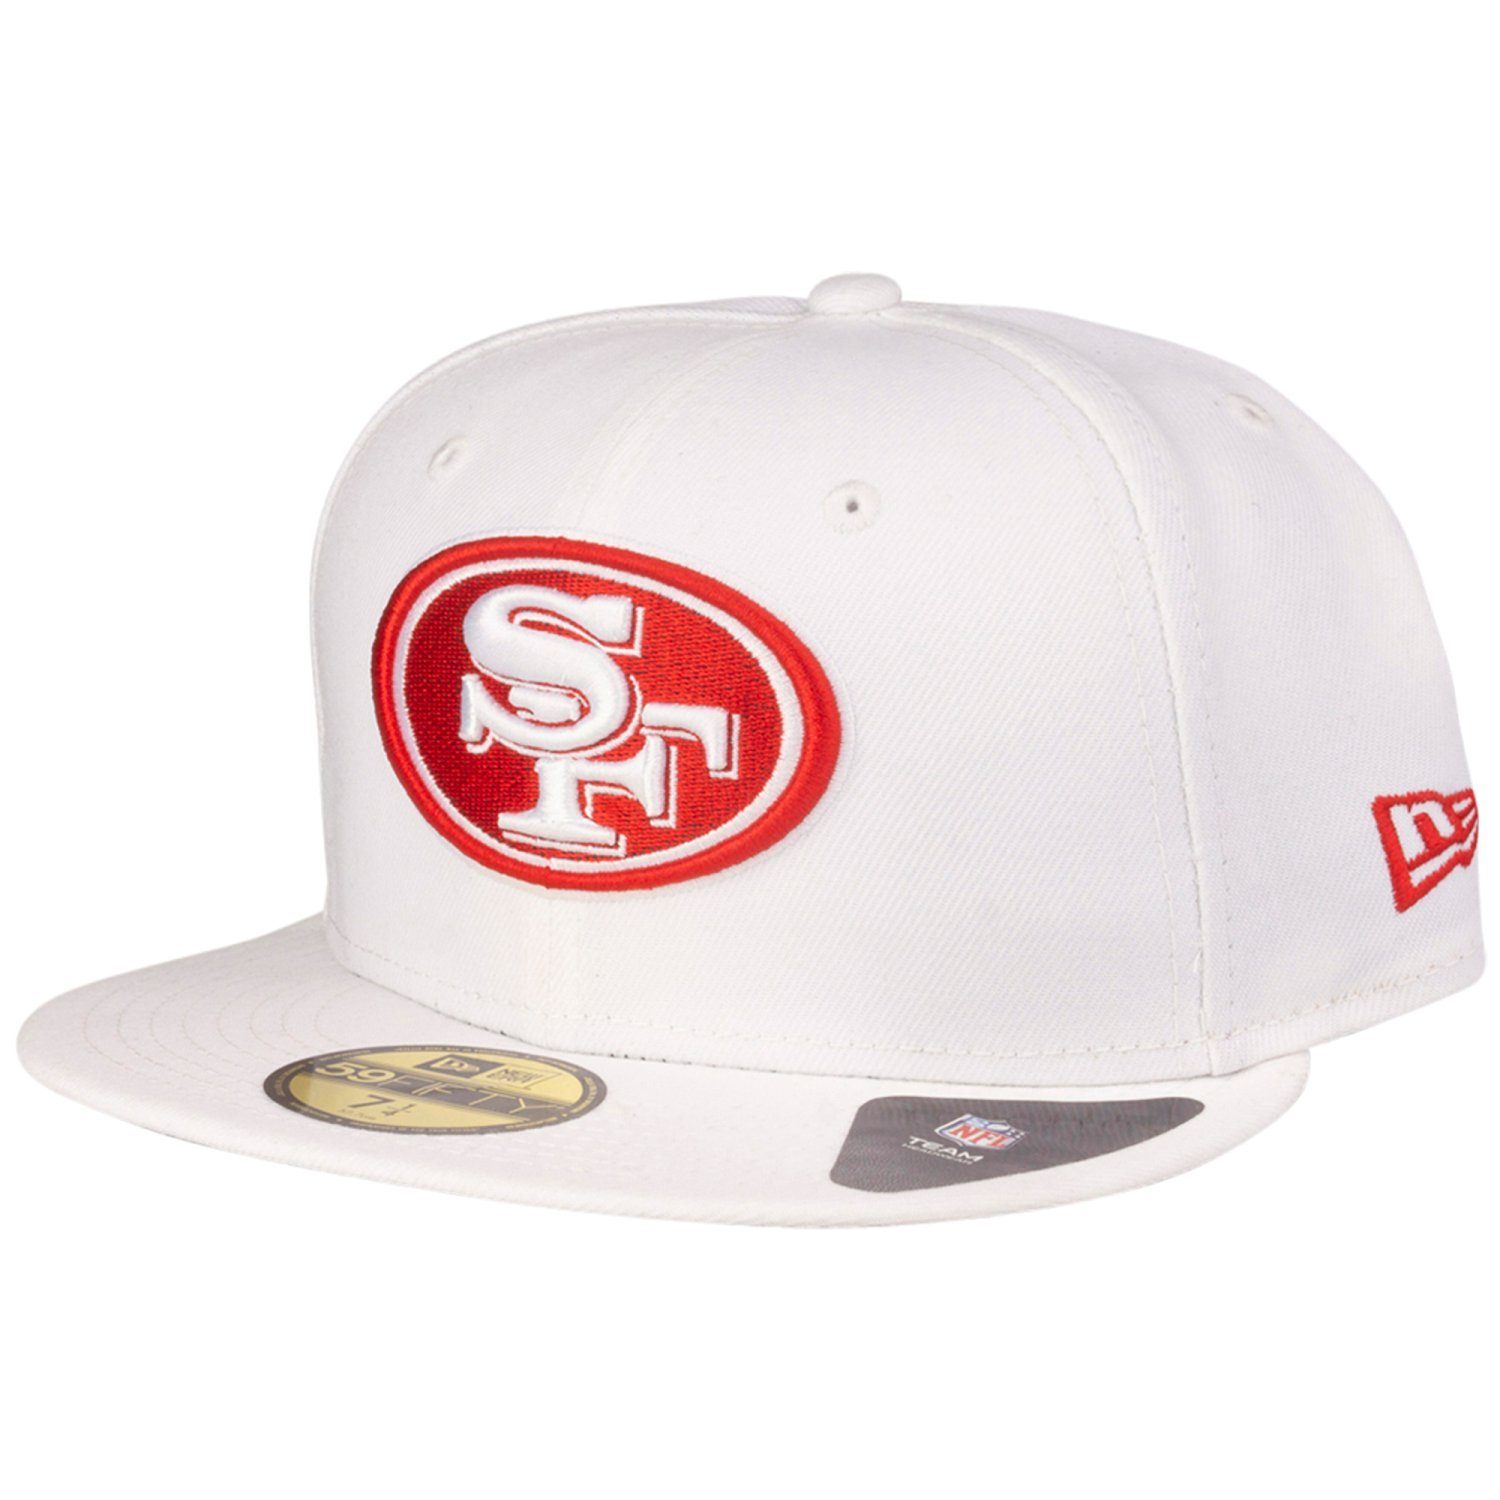 Herren Caps New Era Fitted Cap 59Fifty San Francisco 49ers